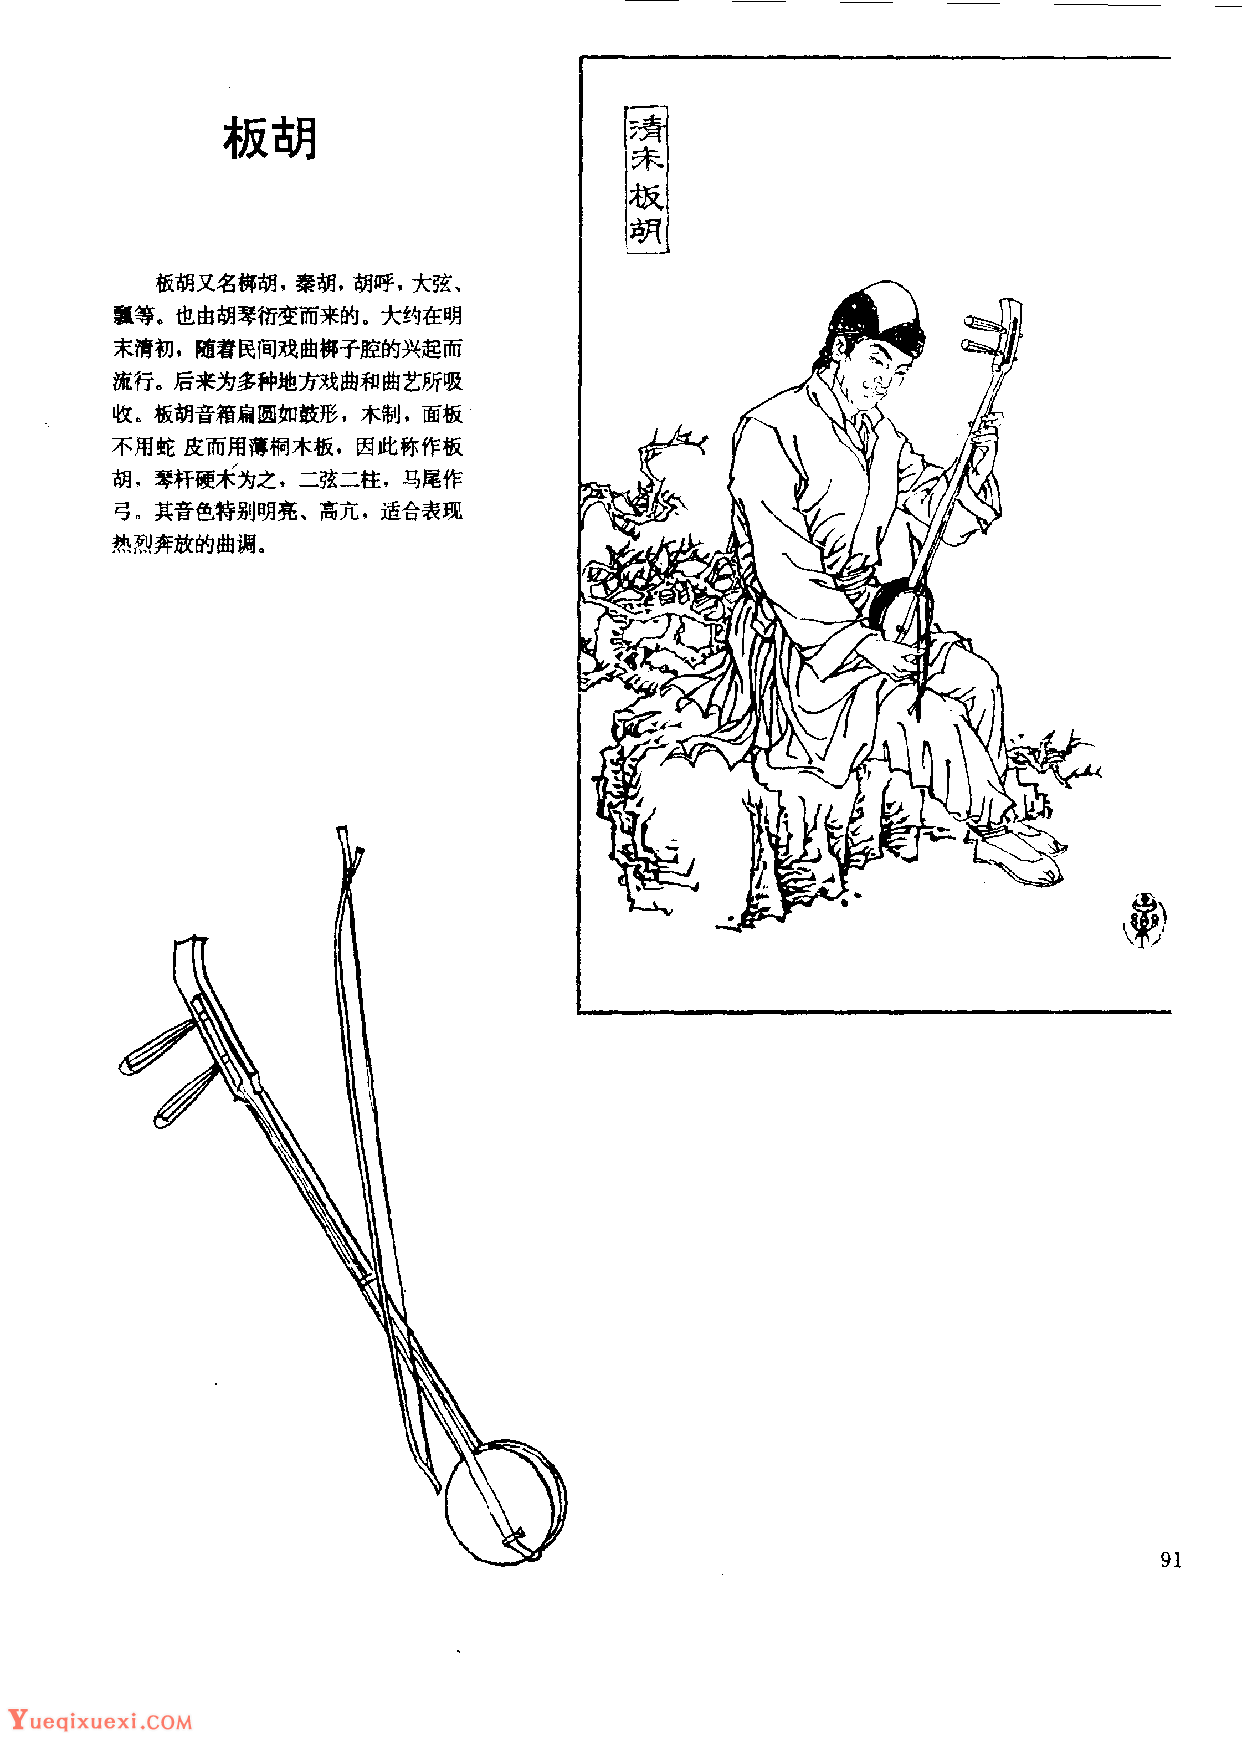 中国古代乐器《板胡》